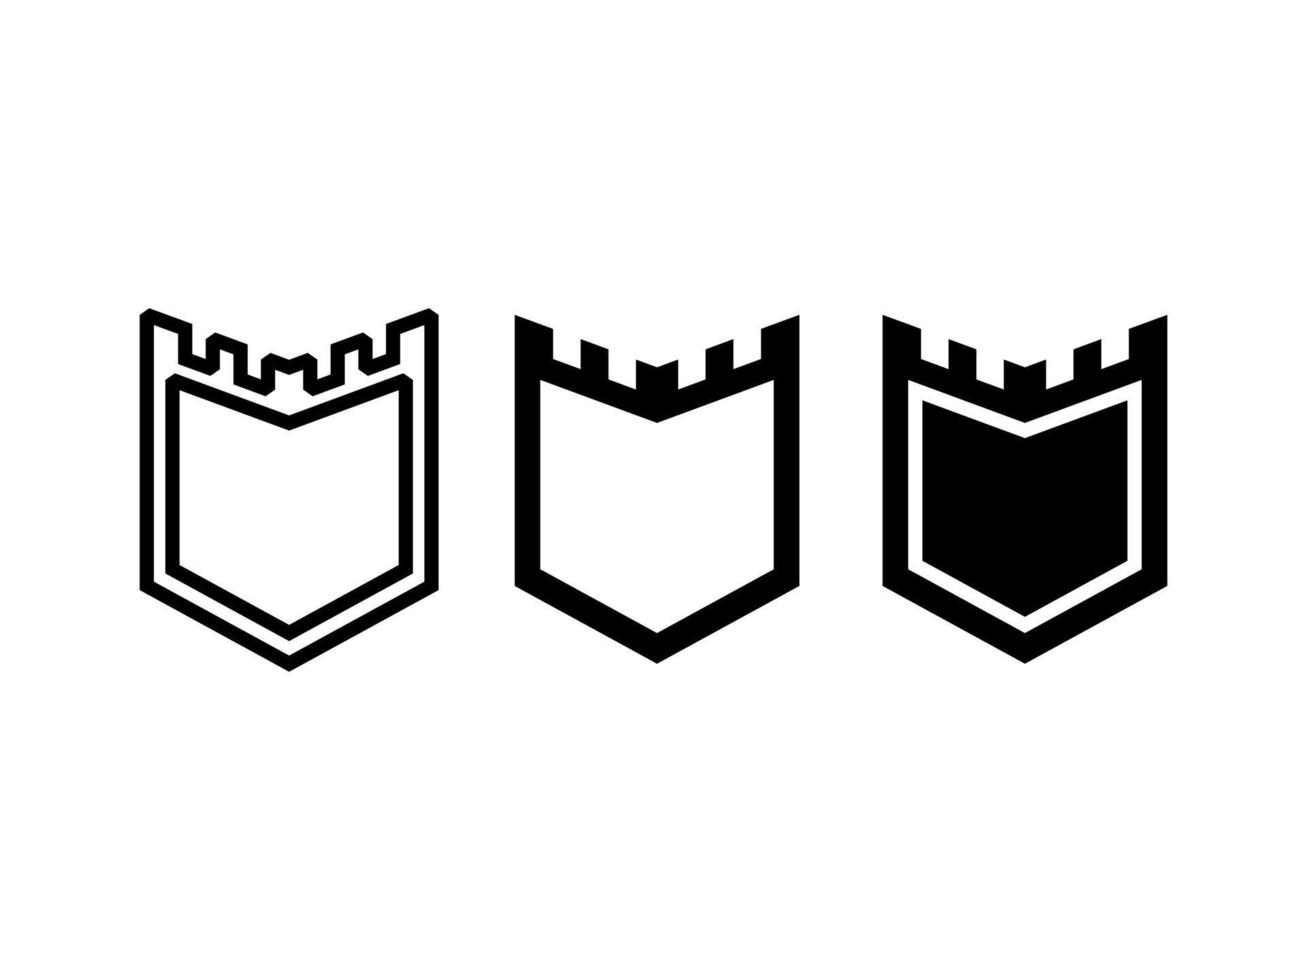 diseño gráfico vectorial en forma de insignias o emblemas con varias formas adecuadas para complementar diseños de logotipos y otros vector